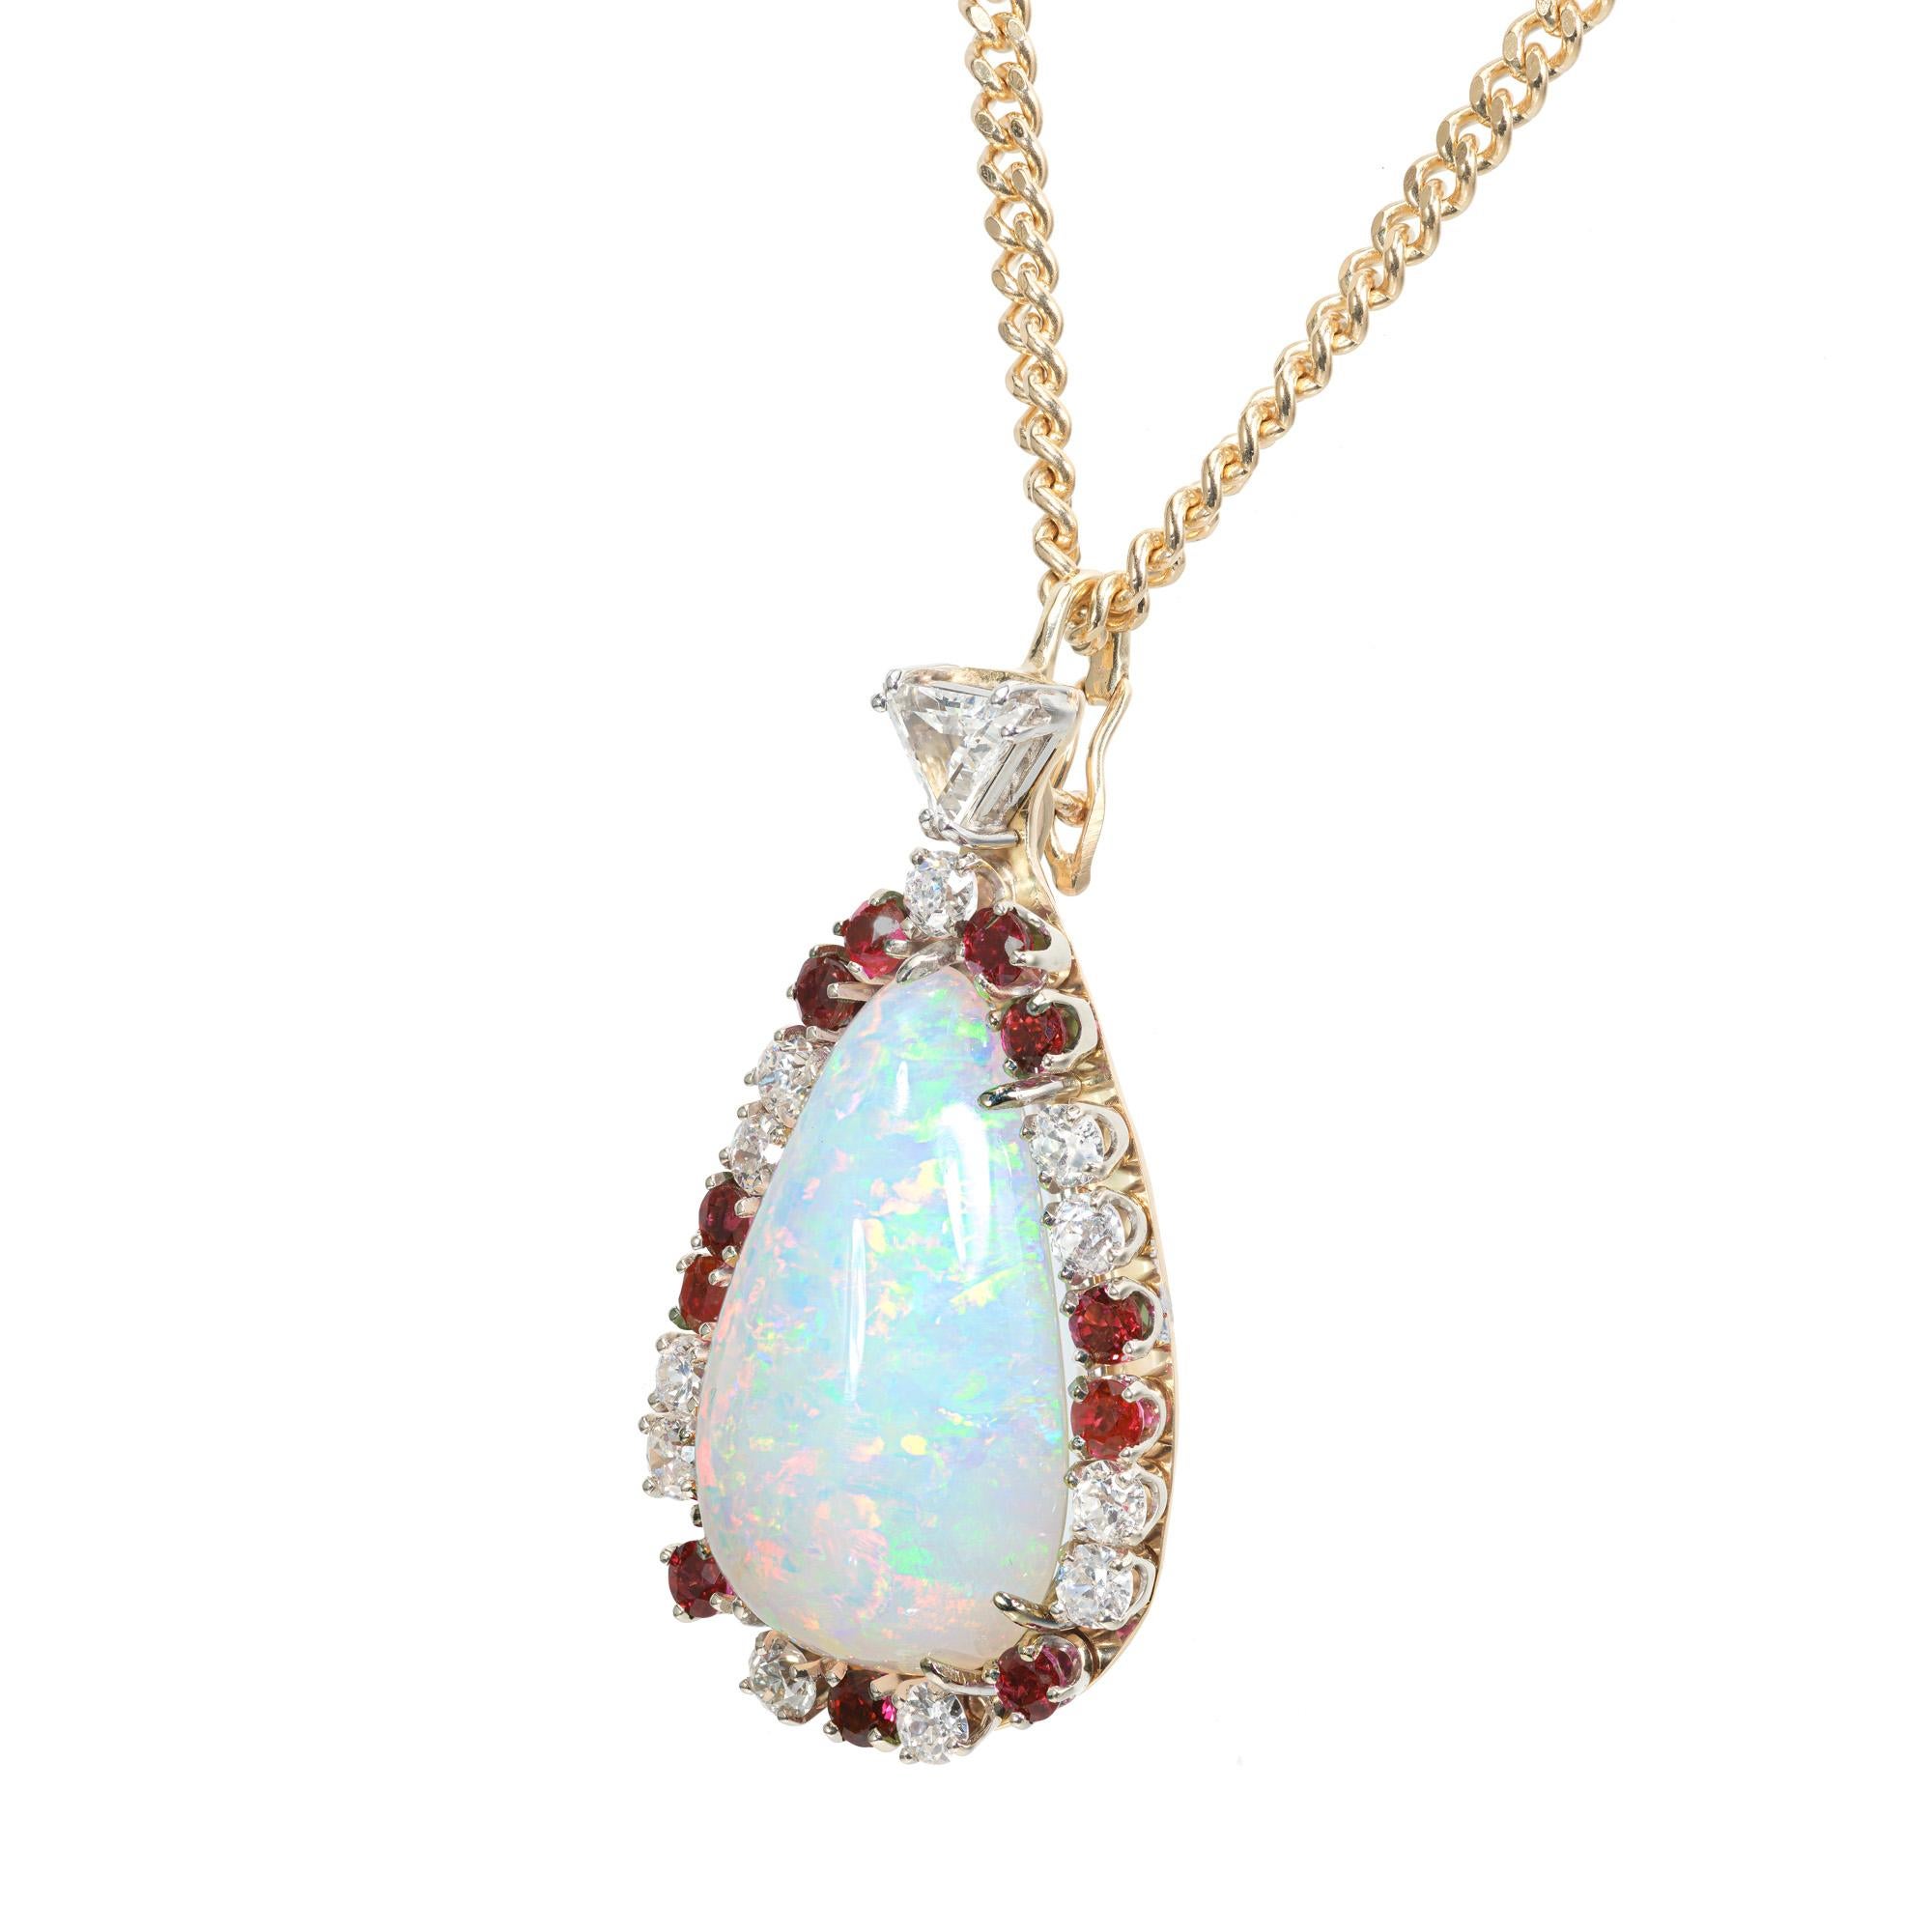 Halskette mit Opal-, Rubin- und Diamant-Anhänger aus den 1960er Jahren. GIA-zertifizierter birnenförmiger Opal von 27,03 Karat mit einem Heiligenschein aus 11 runden Diamanten und 11 runden Rubinen. Akzentuiert mit 1 Diamant im Trillantschliff in